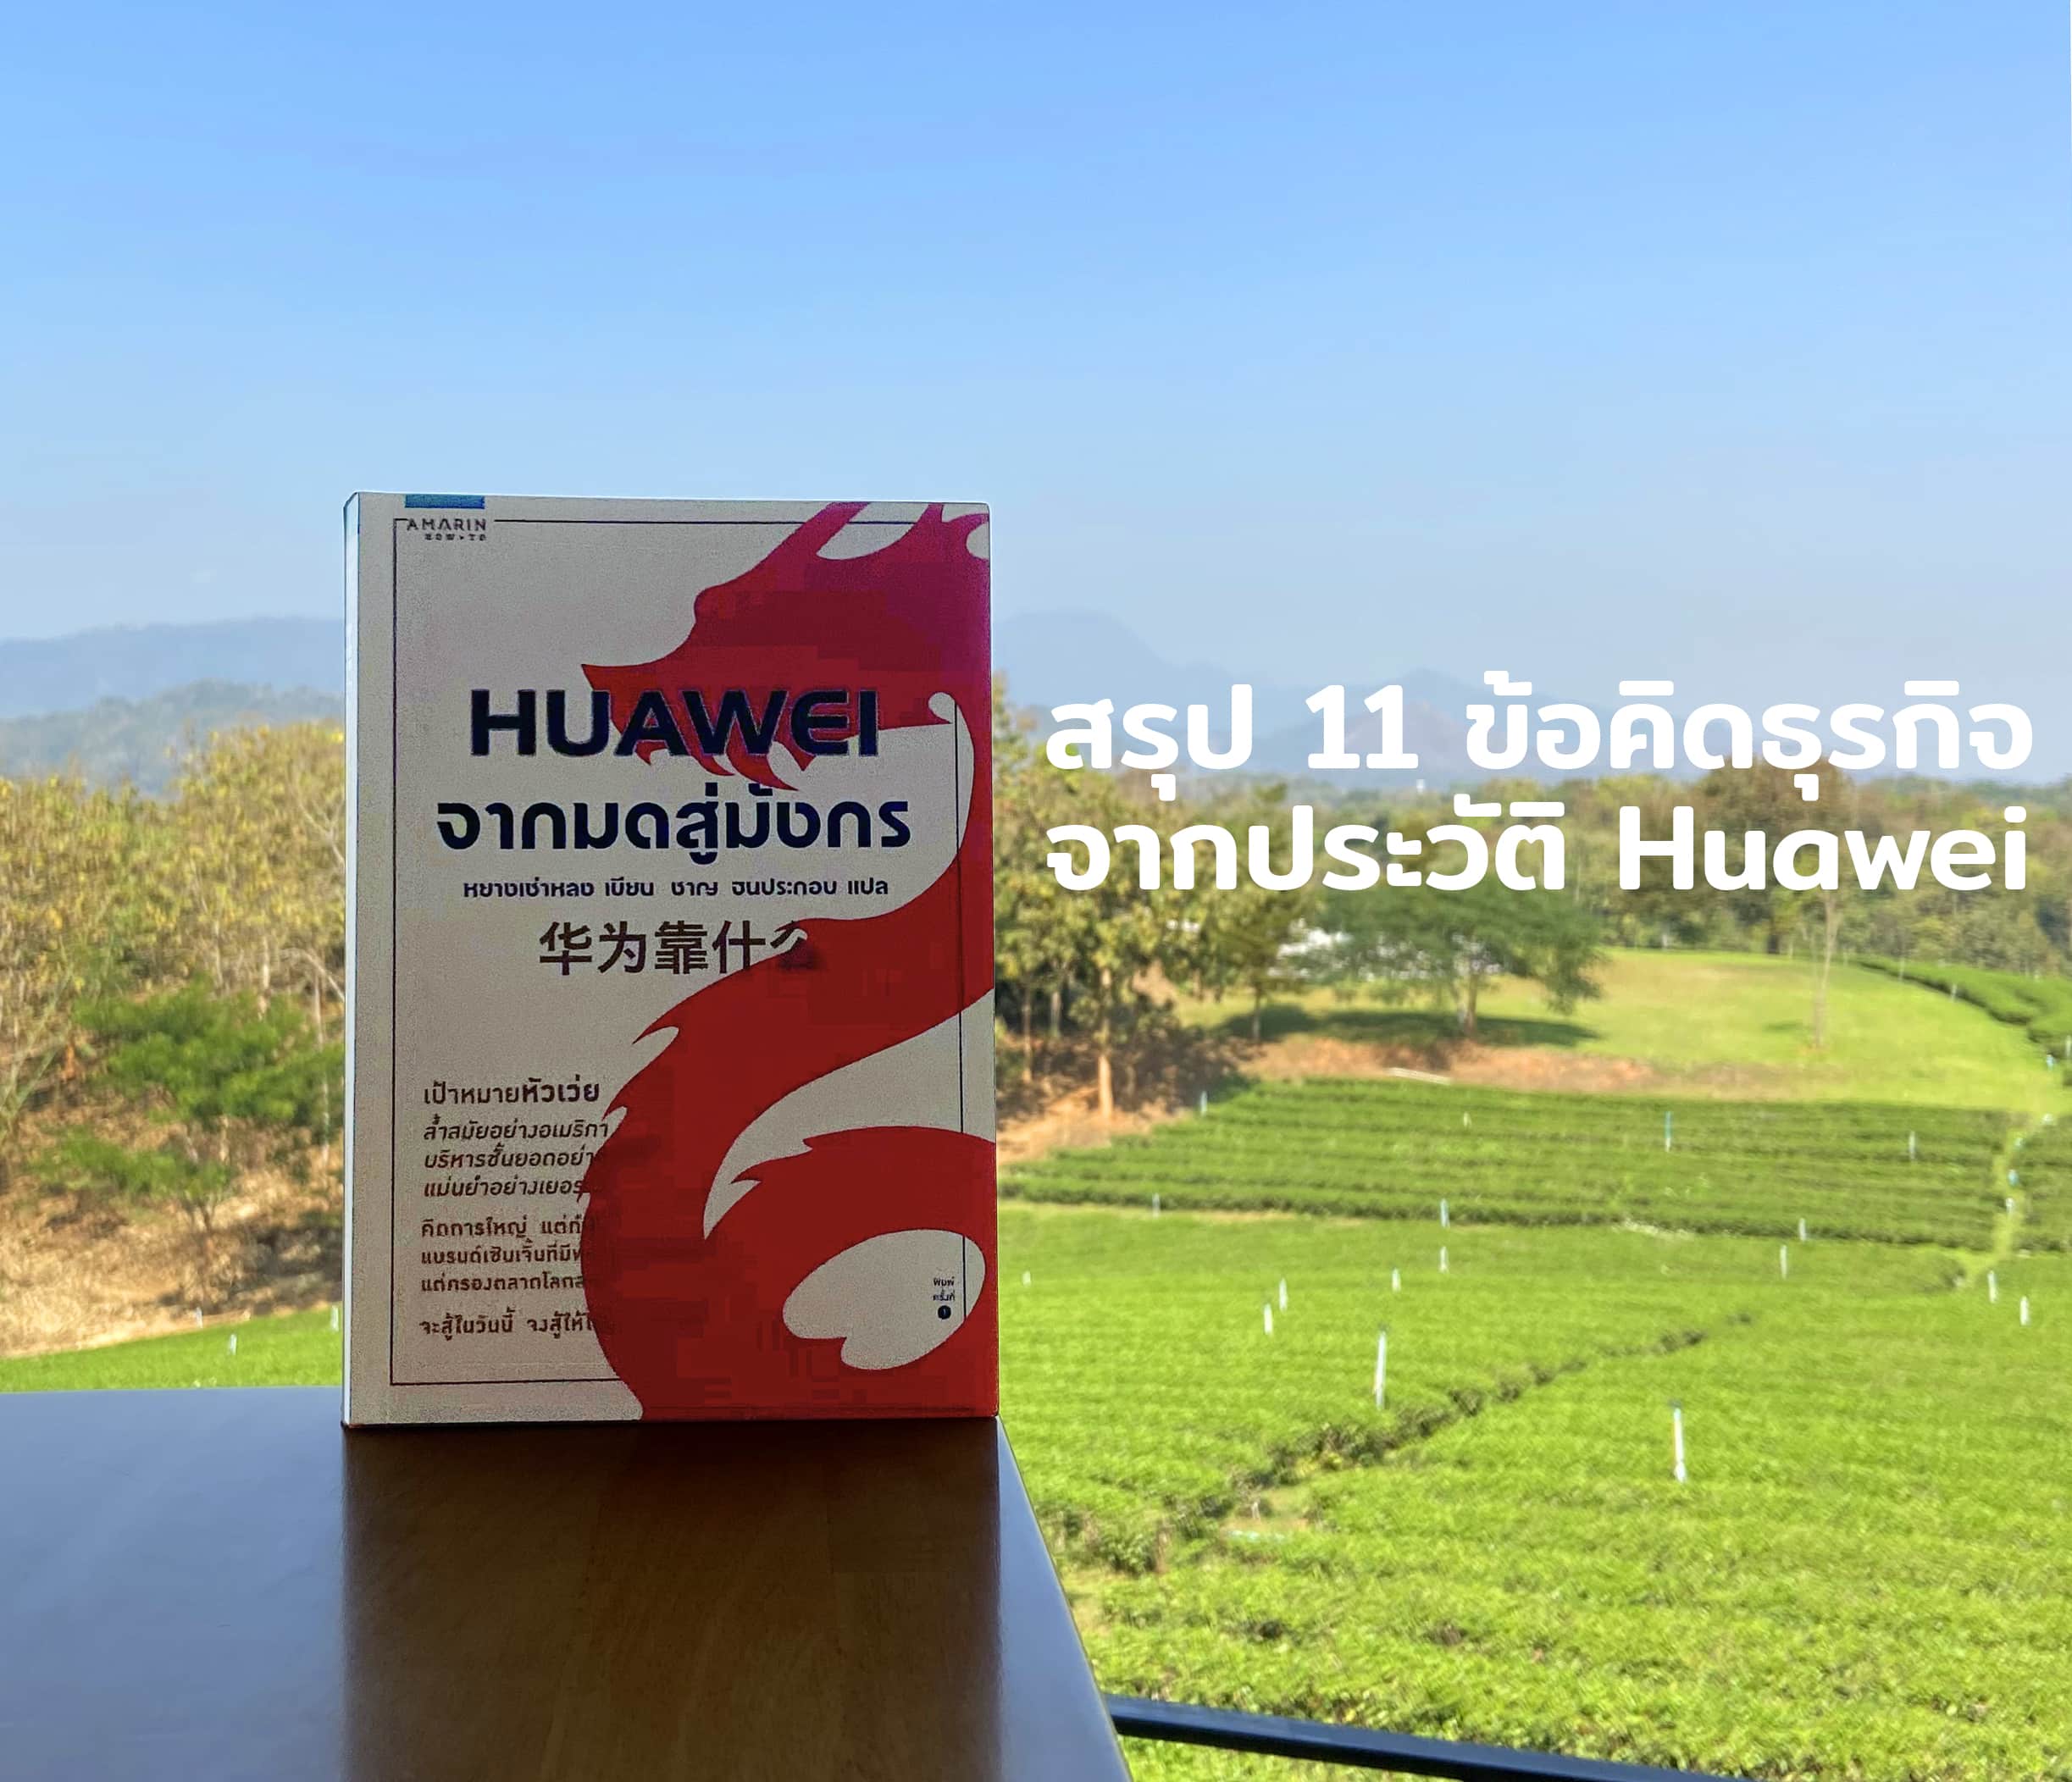 สรุป 11 ข้อคิดทางธุรกิจจากหนังสือประวัติ Huawei จากมดสู่มังกร ฉบับแปลไทย เหรินเจิ้งเฟย จากธุรกิจบ้านนอกสู่แบรนด์อินเตอร์ระดับโลก